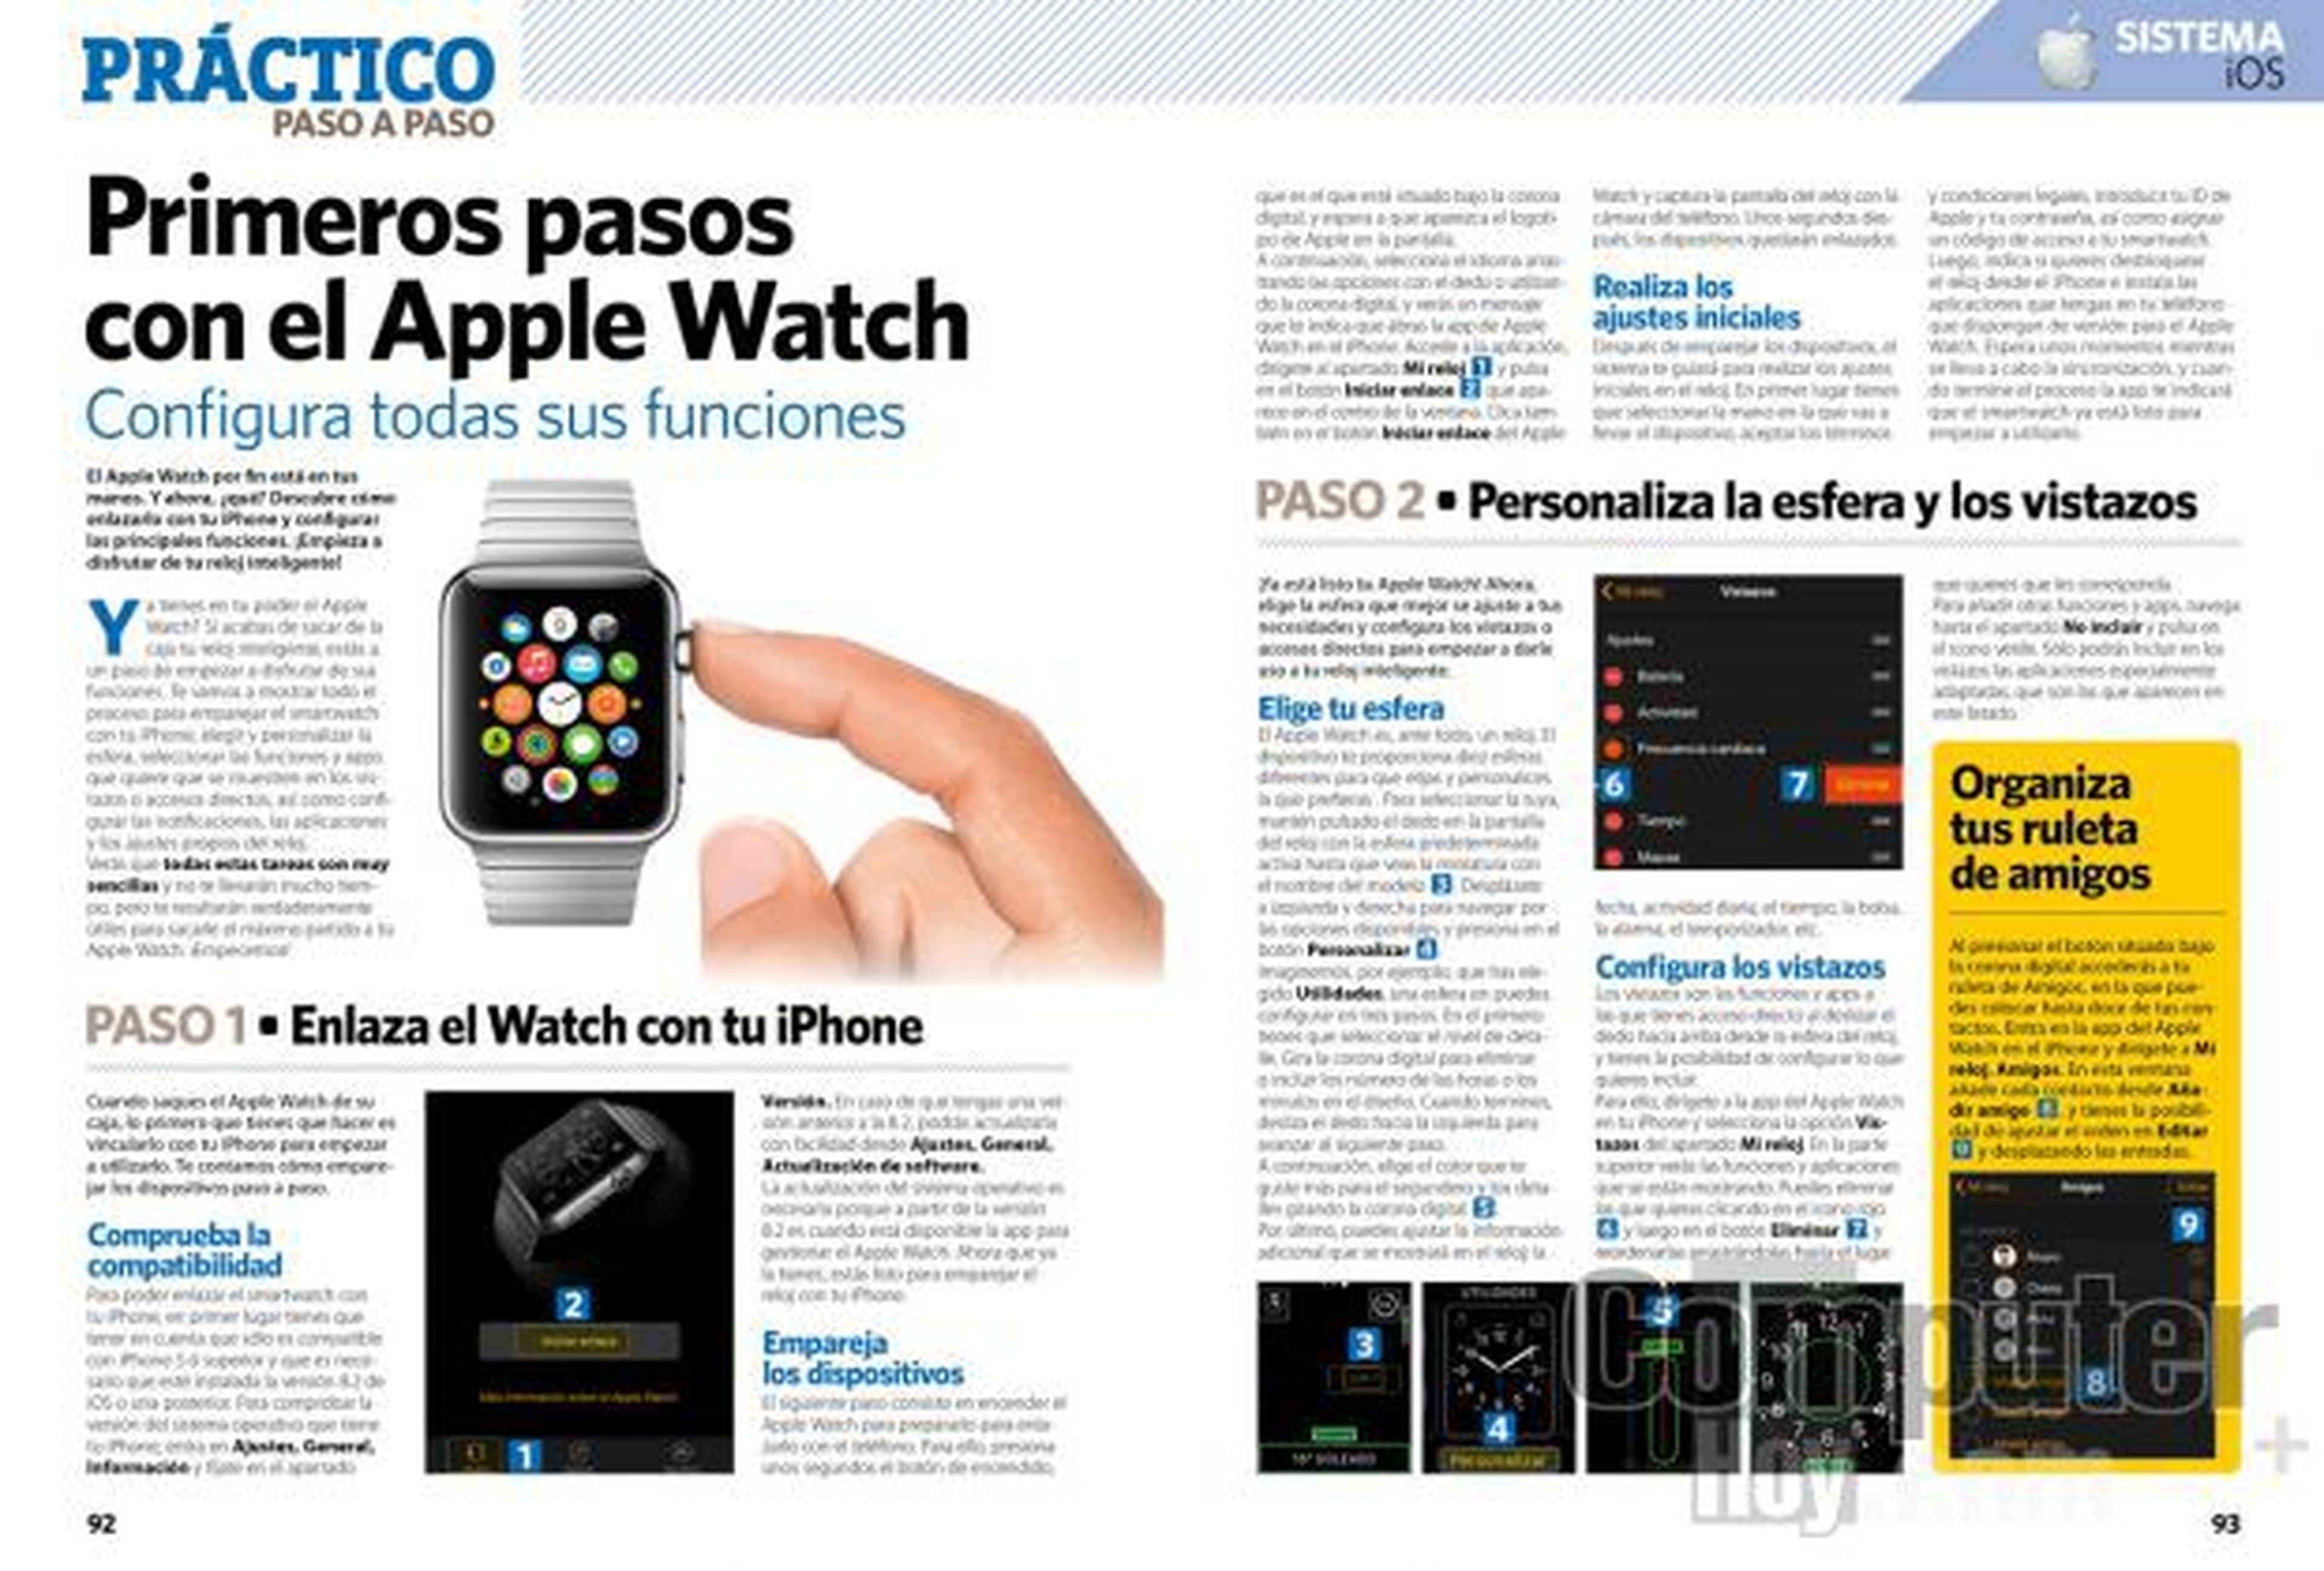 Primeros pasos con el Apple Watch